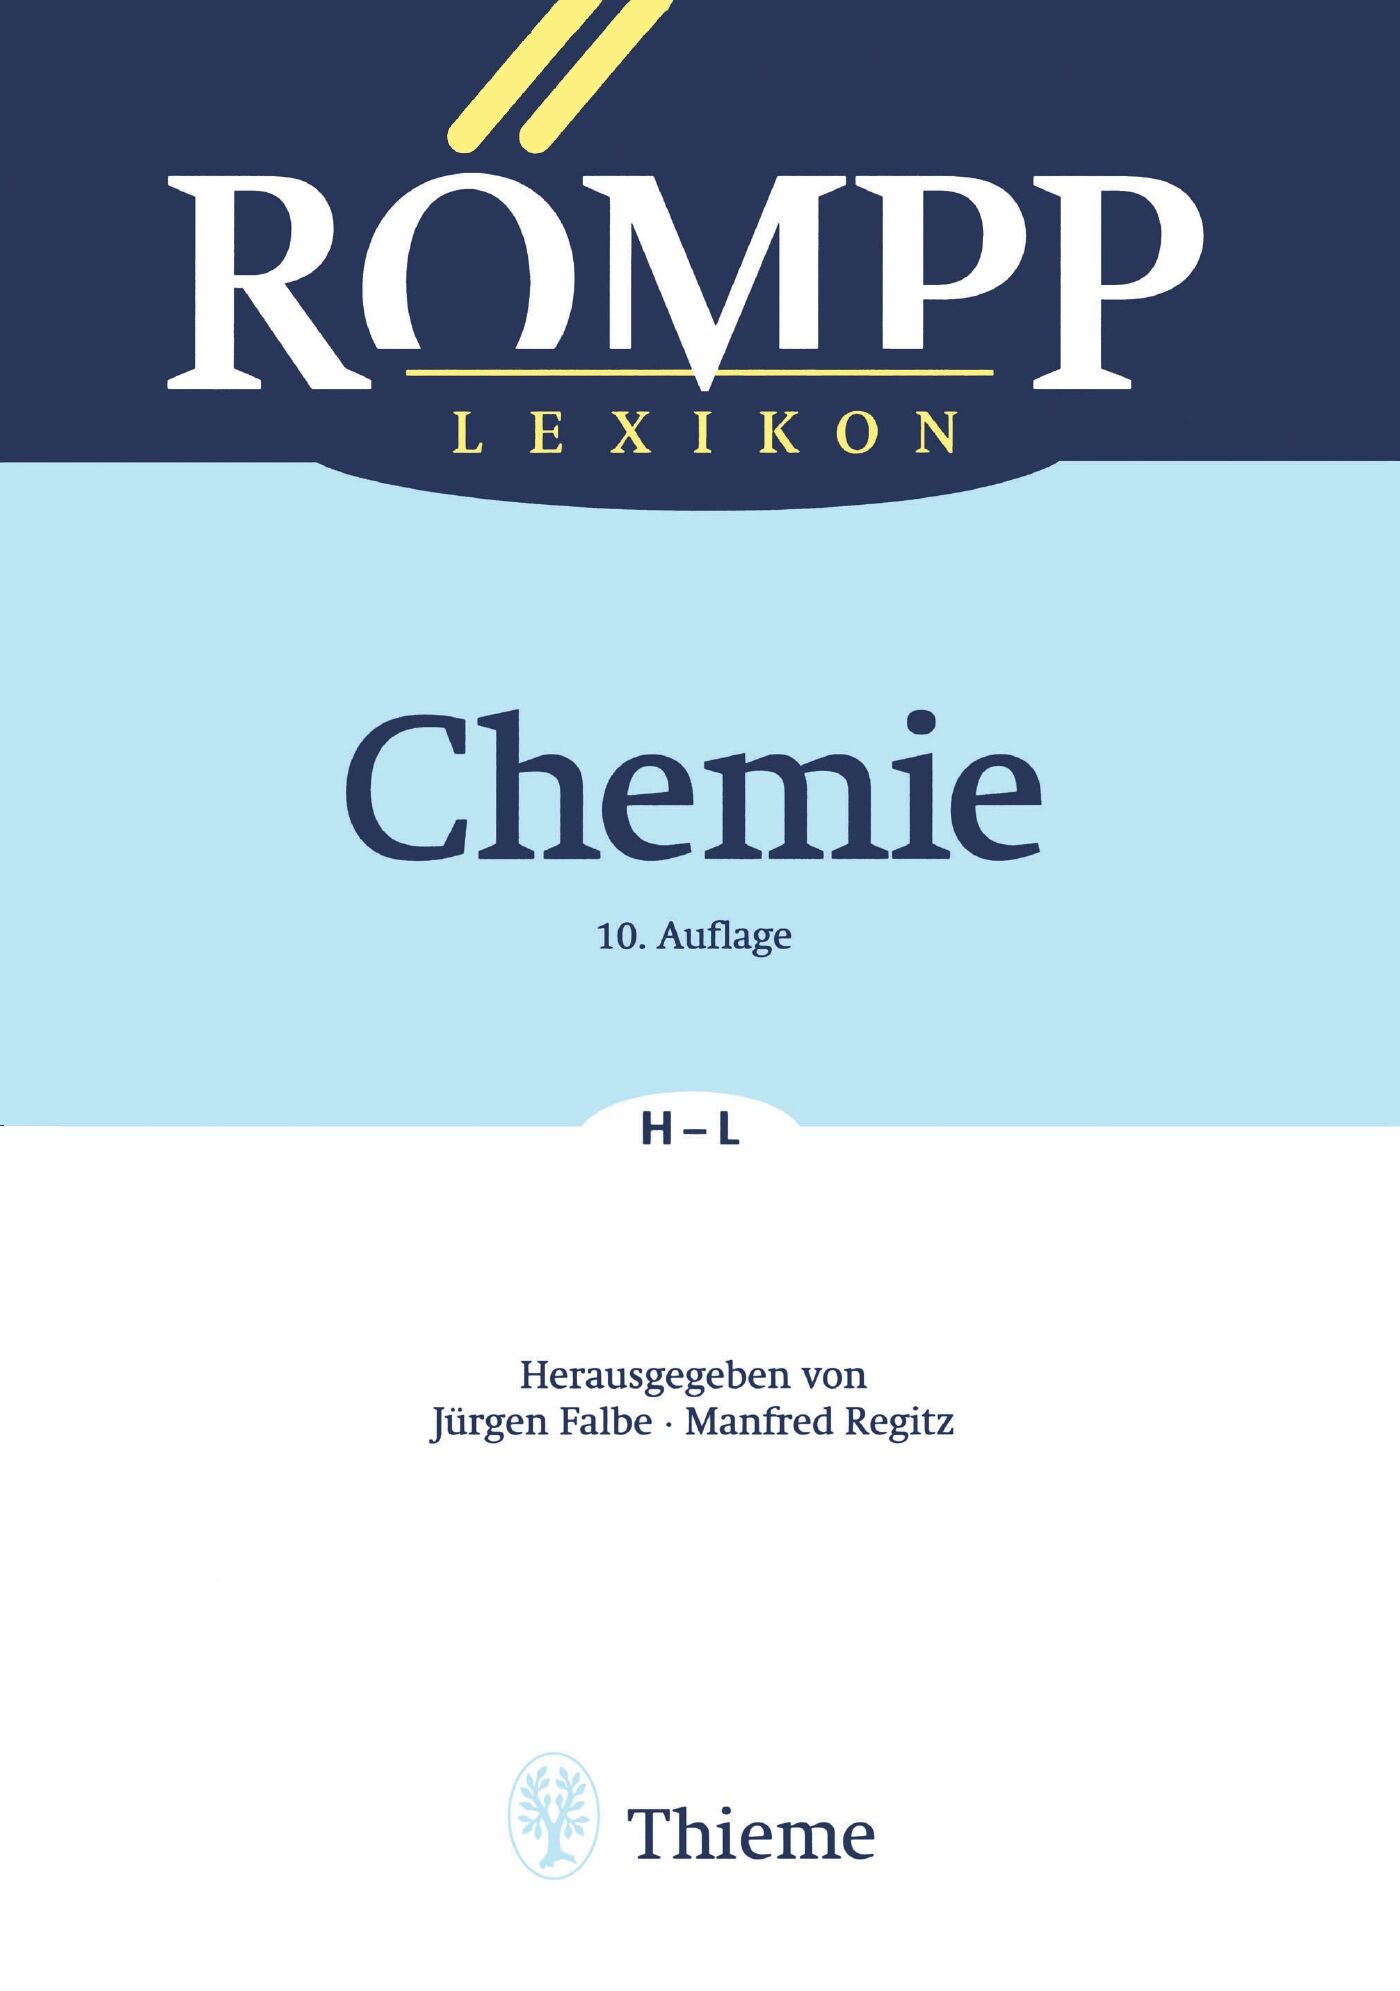 RÖMPP Lexikon Chemie, 10. Auflage, 1996-1999, 9783132000117